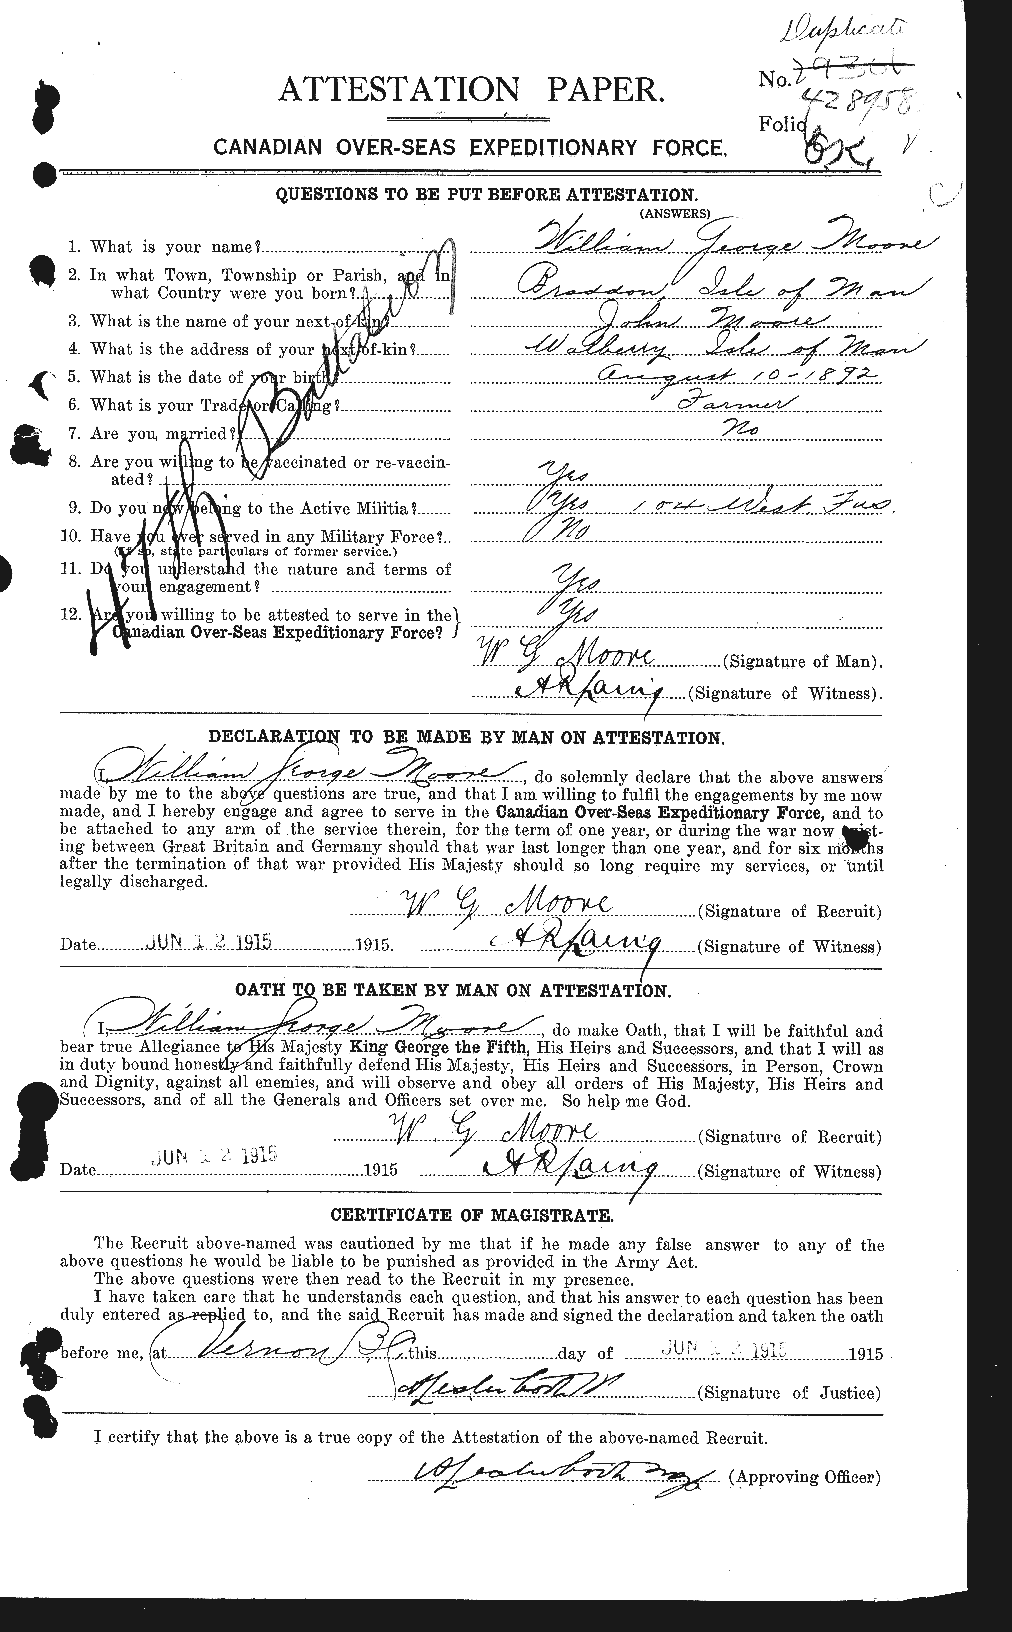 Dossiers du Personnel de la Première Guerre mondiale - CEC 505812a